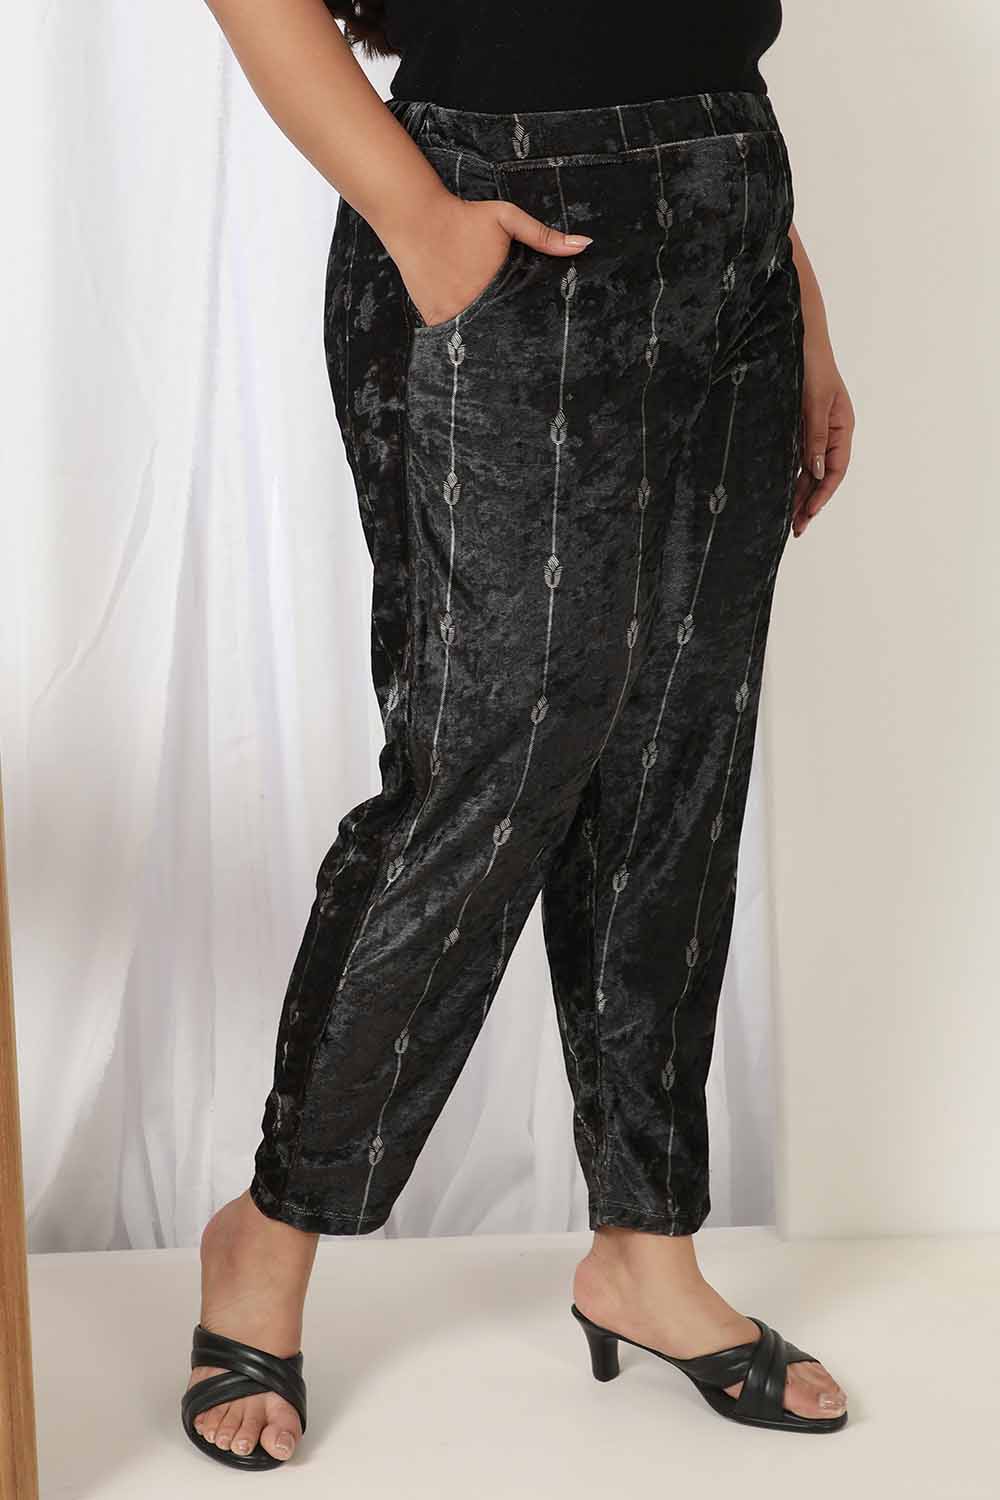 Plus Size Black Printed Velvet Pant for Women